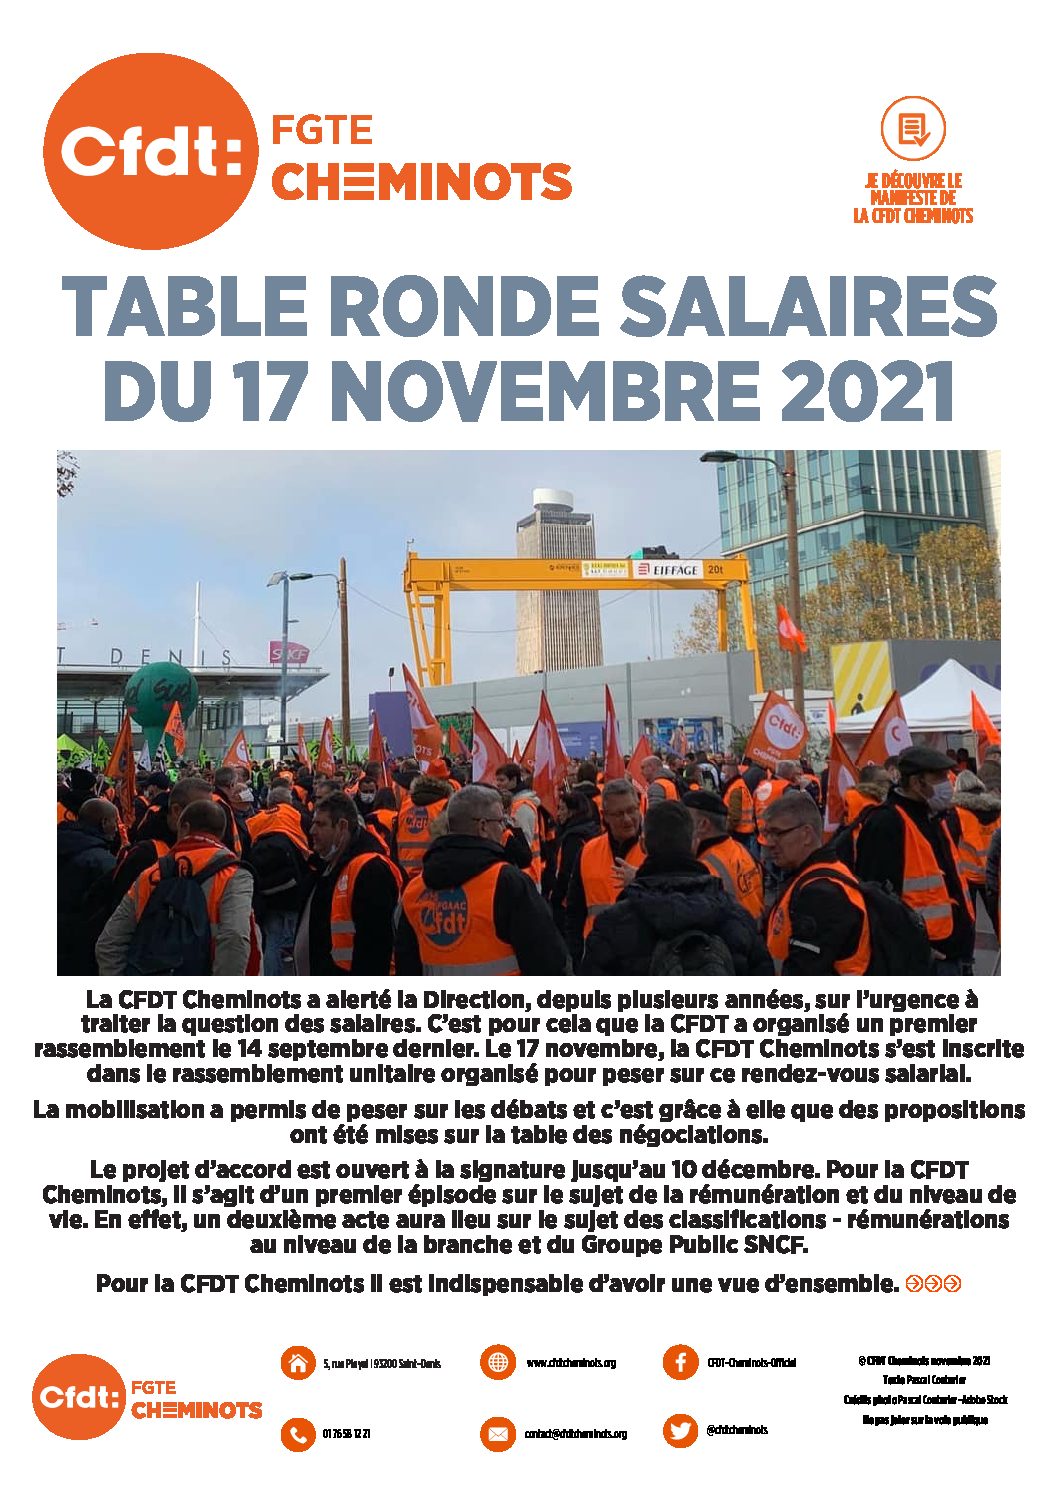 TABLE RONDE SALAIRES DU 17 NOVEMBRE 2021